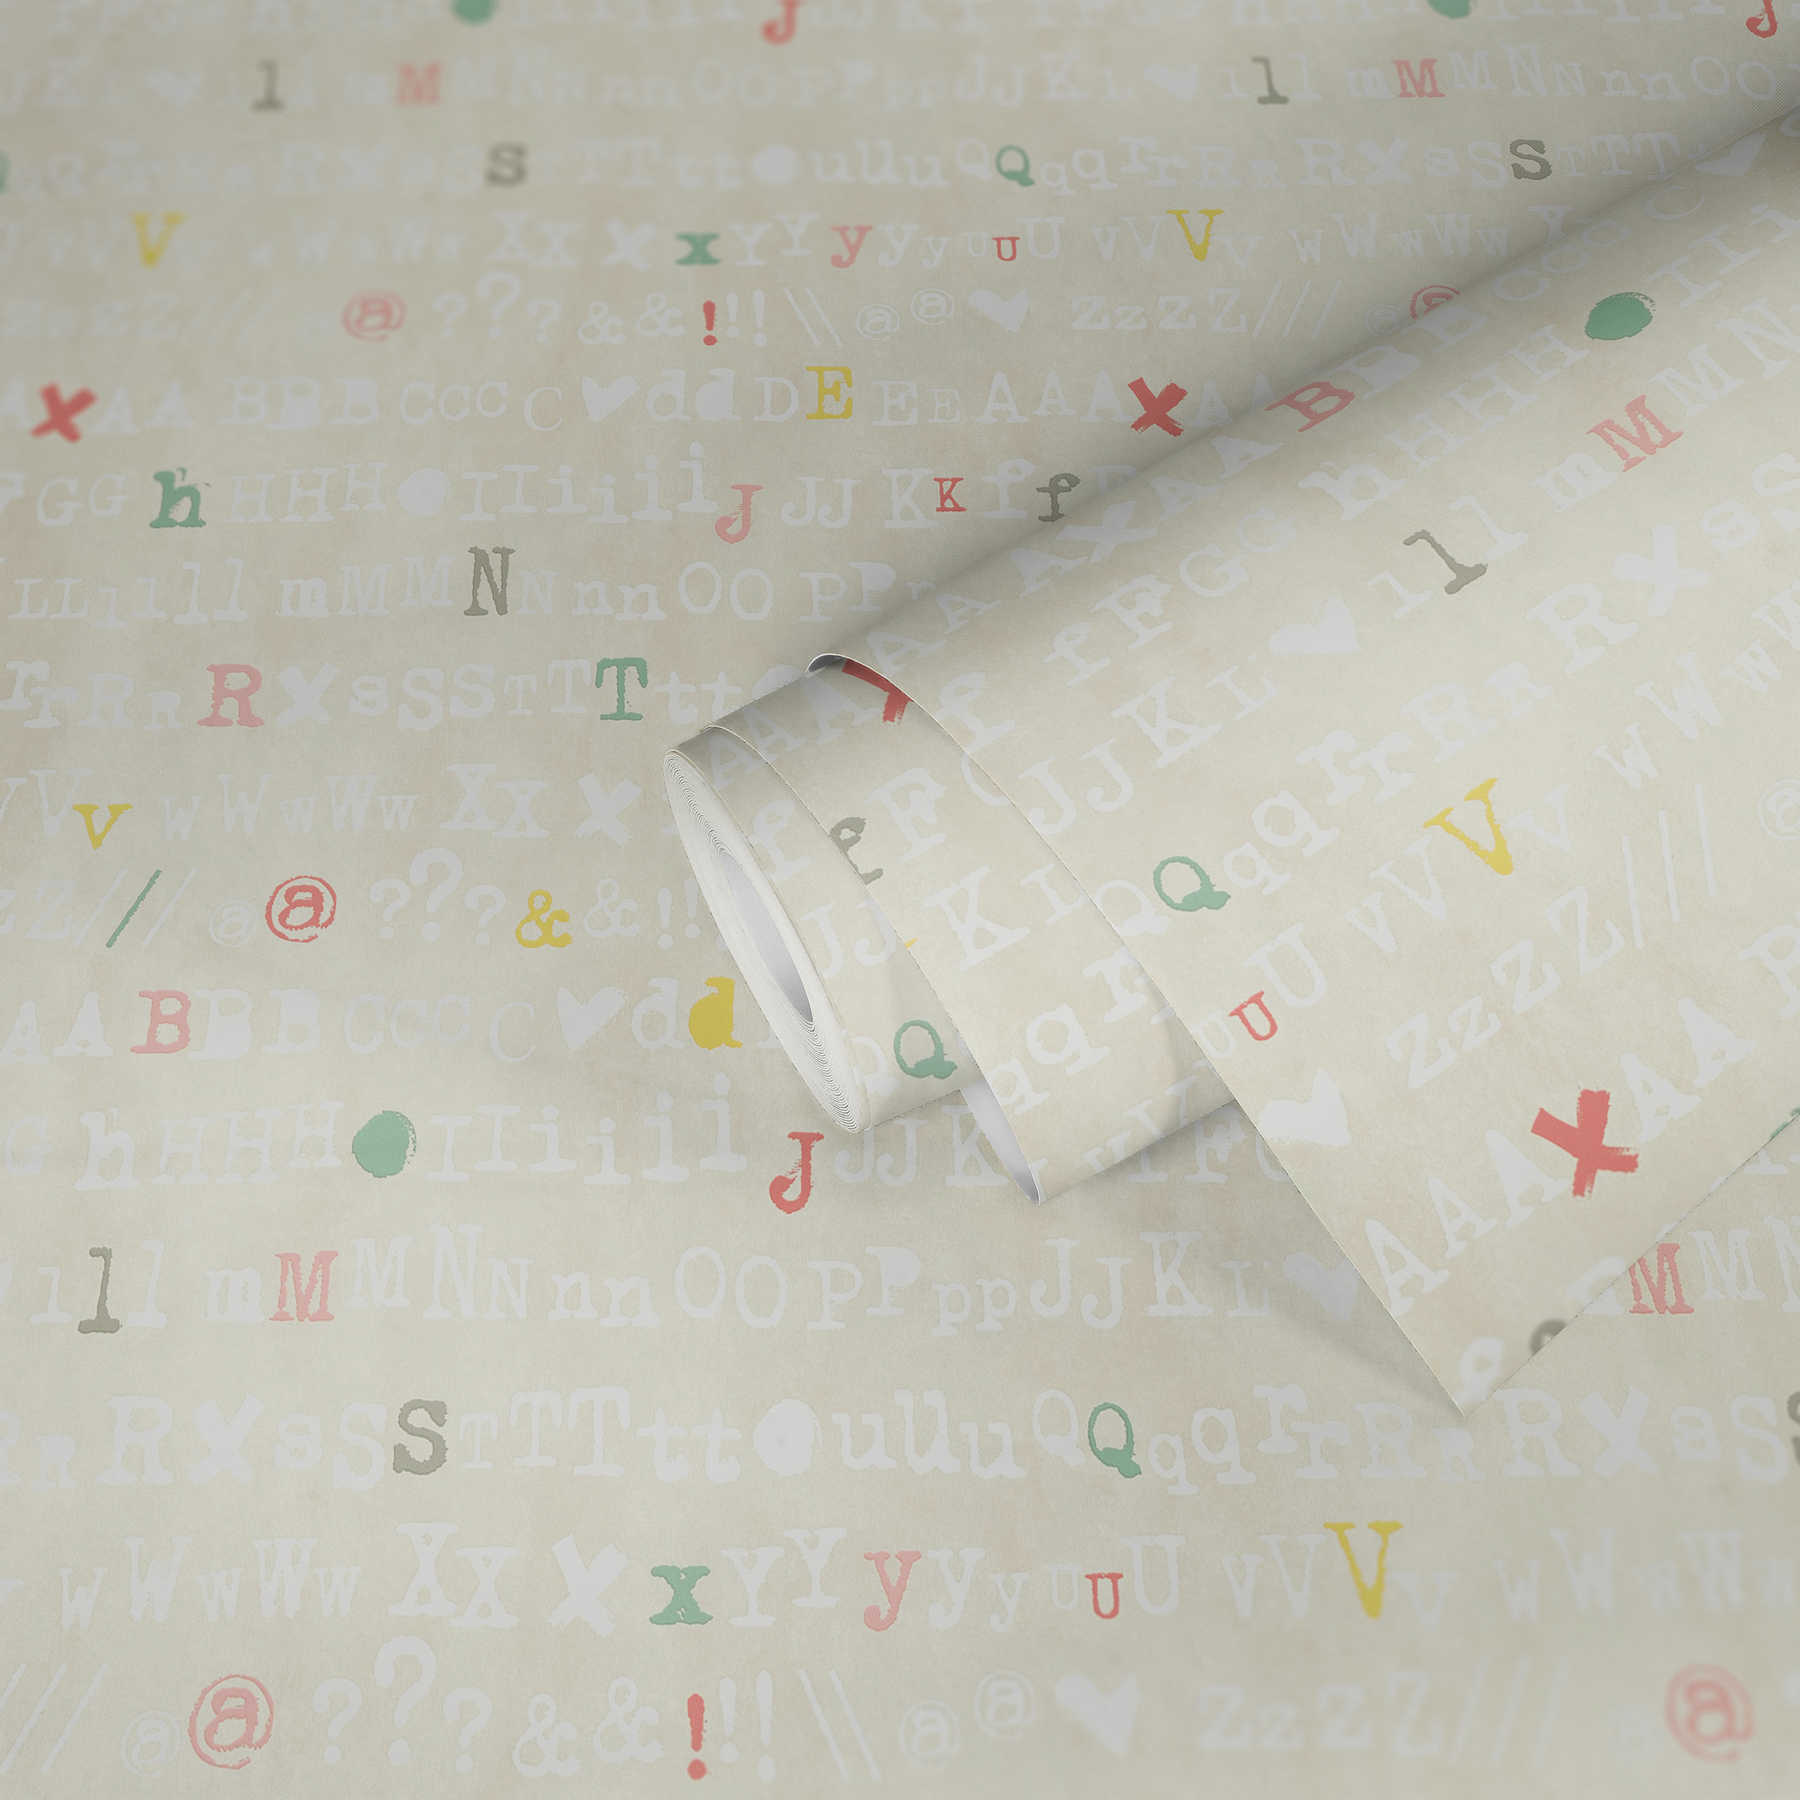             Tapete Grafik Dekor mit bunten Lettern für Jugendzimmer – Creme, Gelb
        